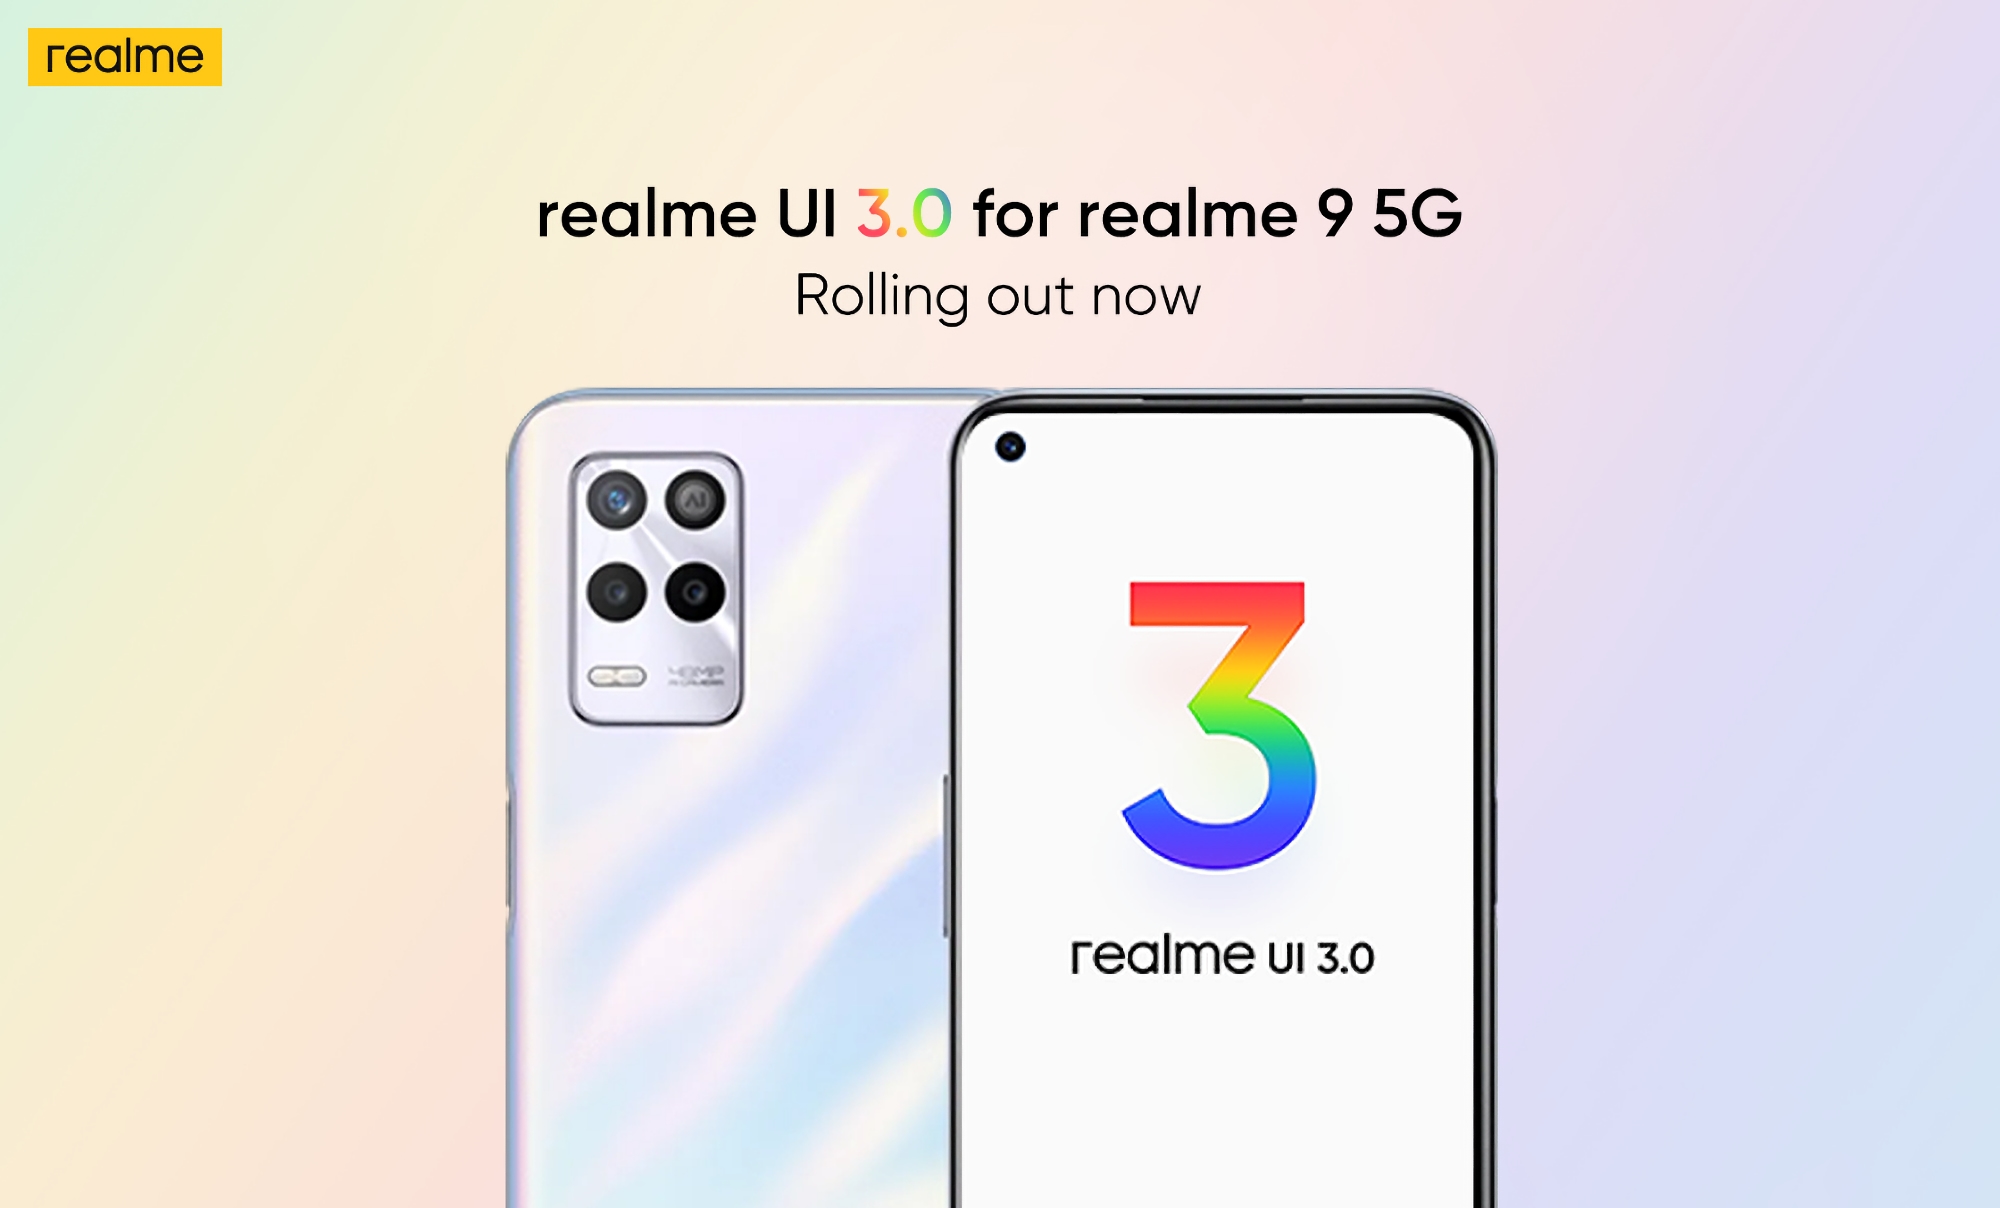 realme 9 5G ha ottenuto una versione stabile della realme UI 3.0 basata su Android 12